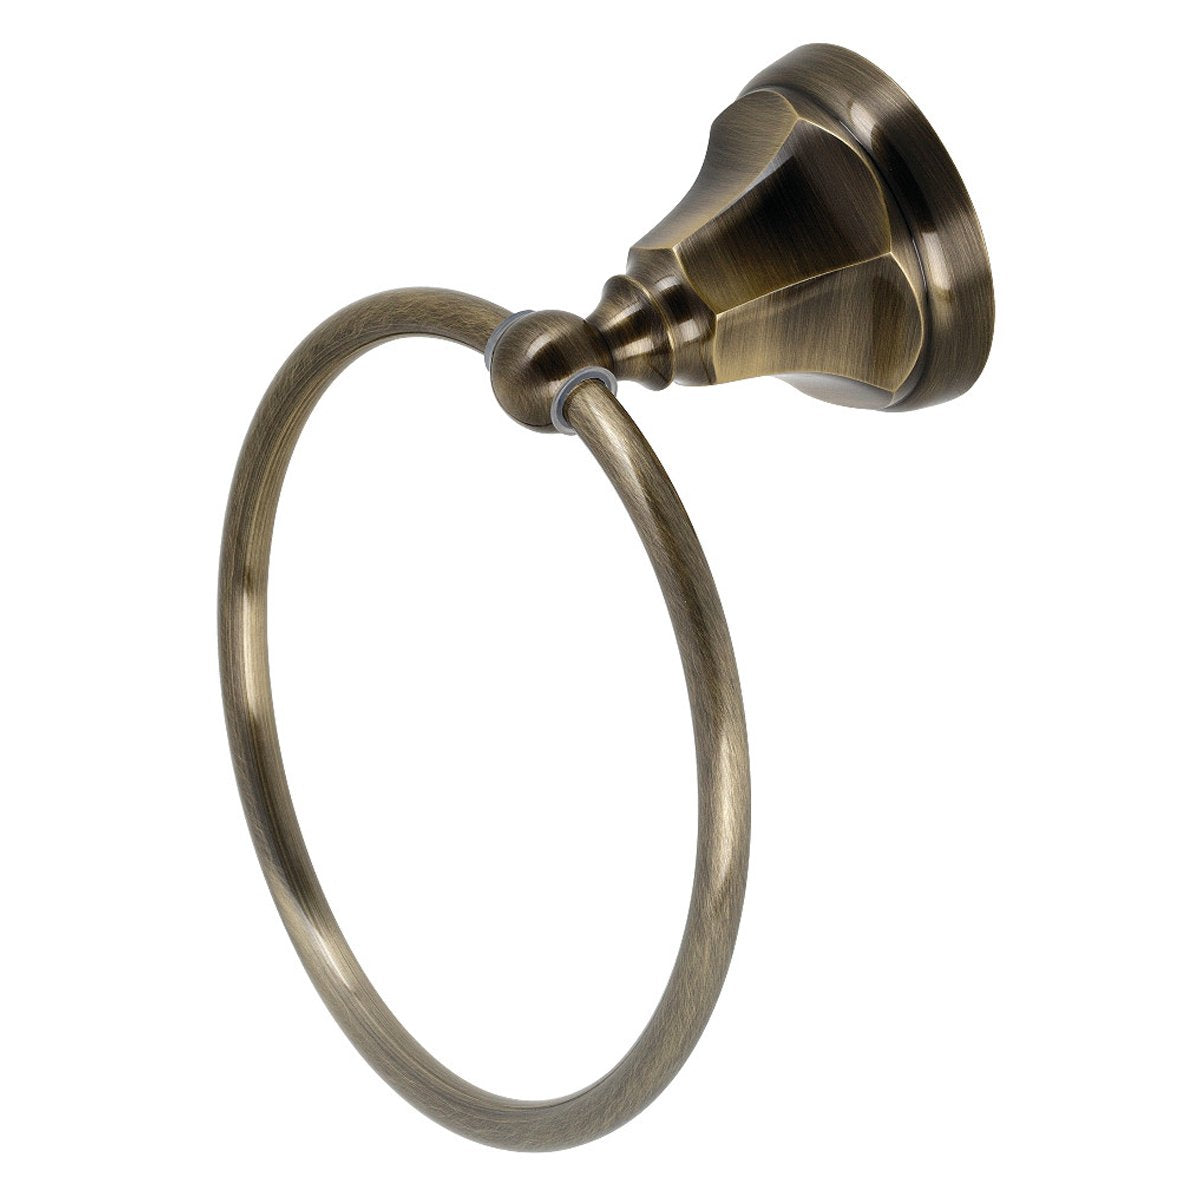 Kingston Brass Metropolitan 6-Inch Towel Ring in Antique Brass